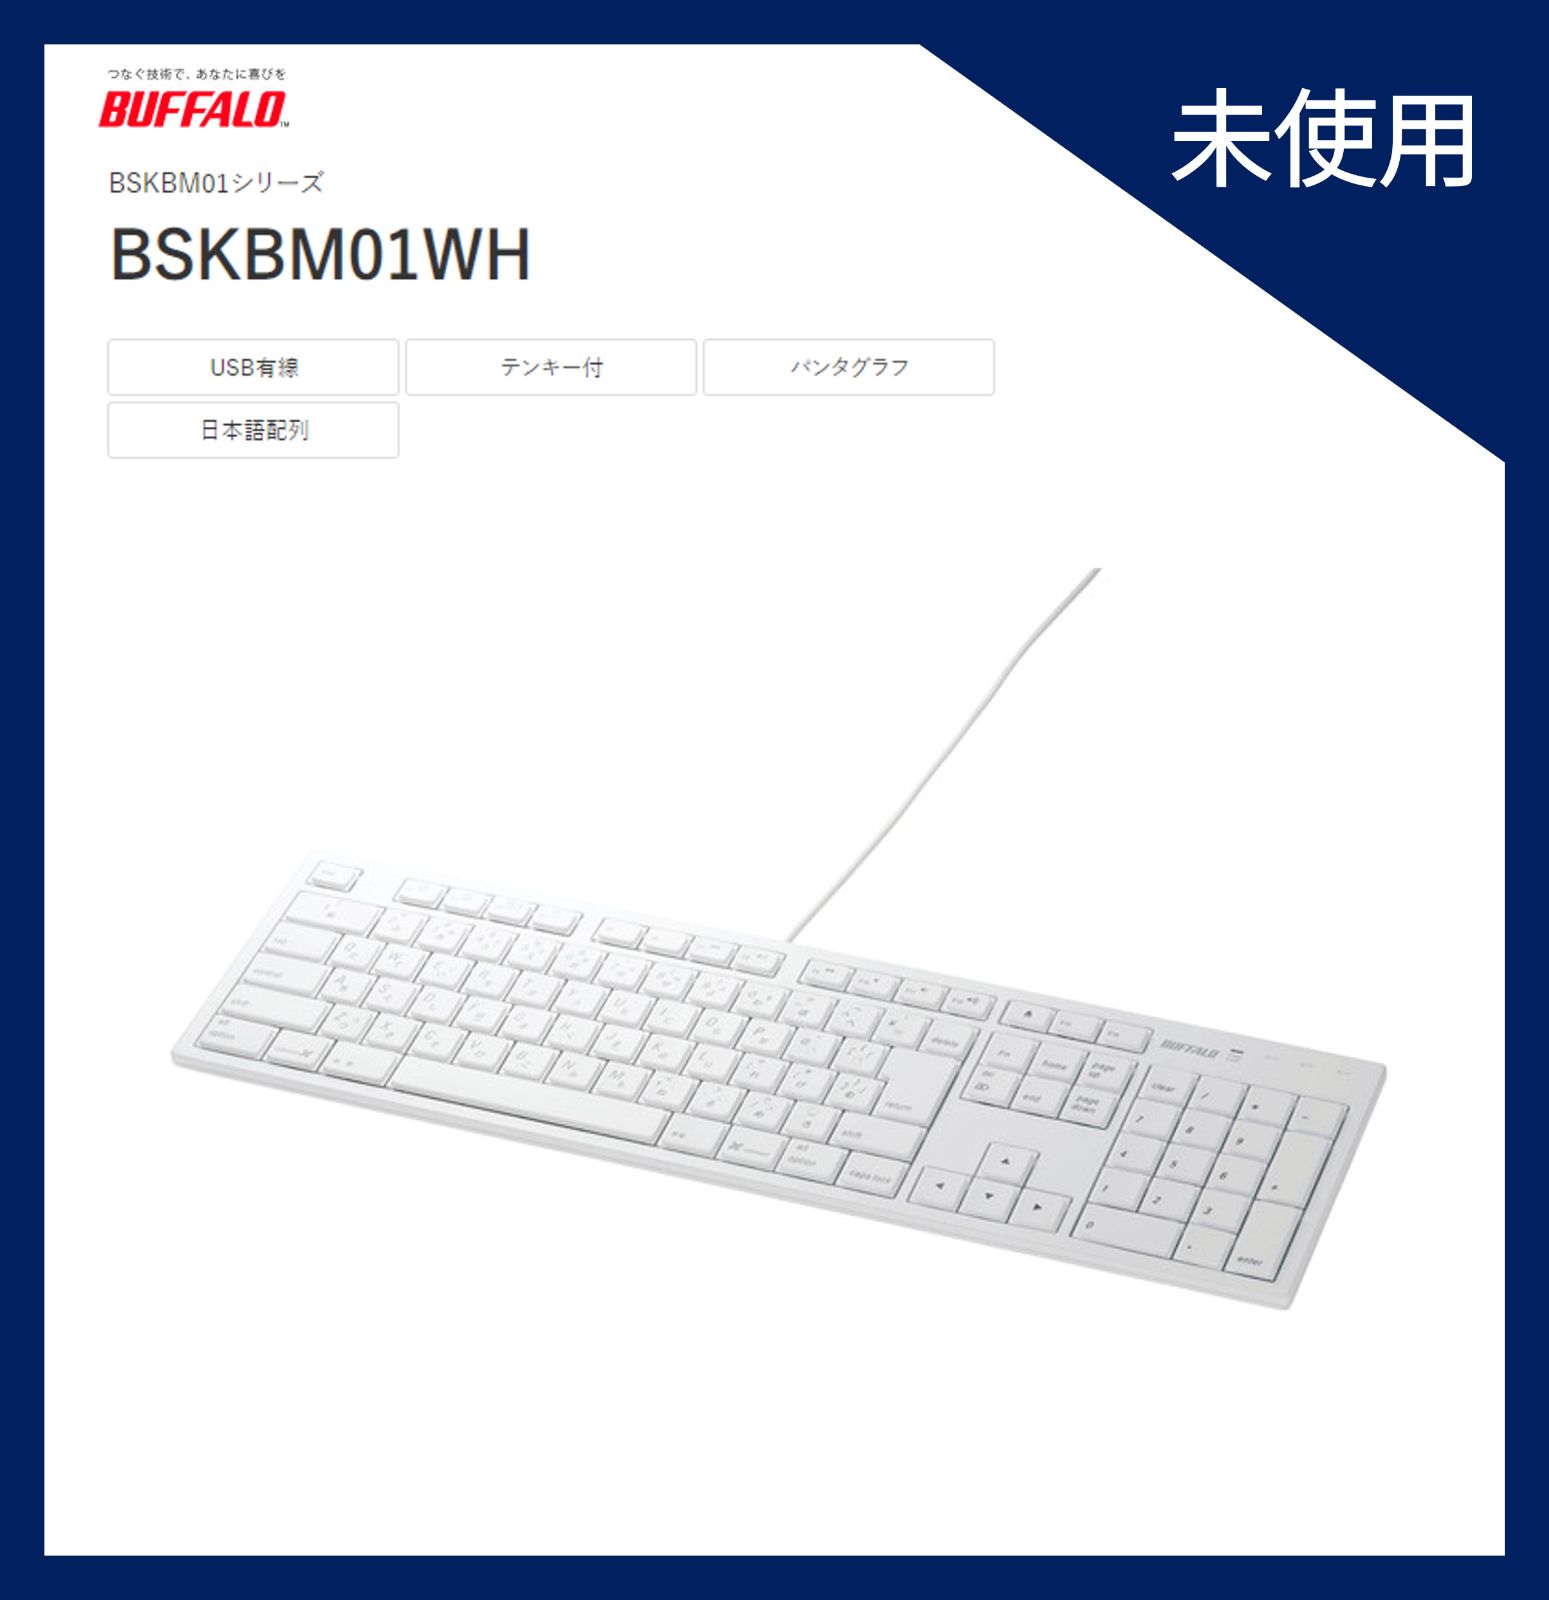 BUFFALO フルキーボード USB接続 パンタグラフ Macモデル ホワイト BSKBM01WH 人気を誇る - キーボード